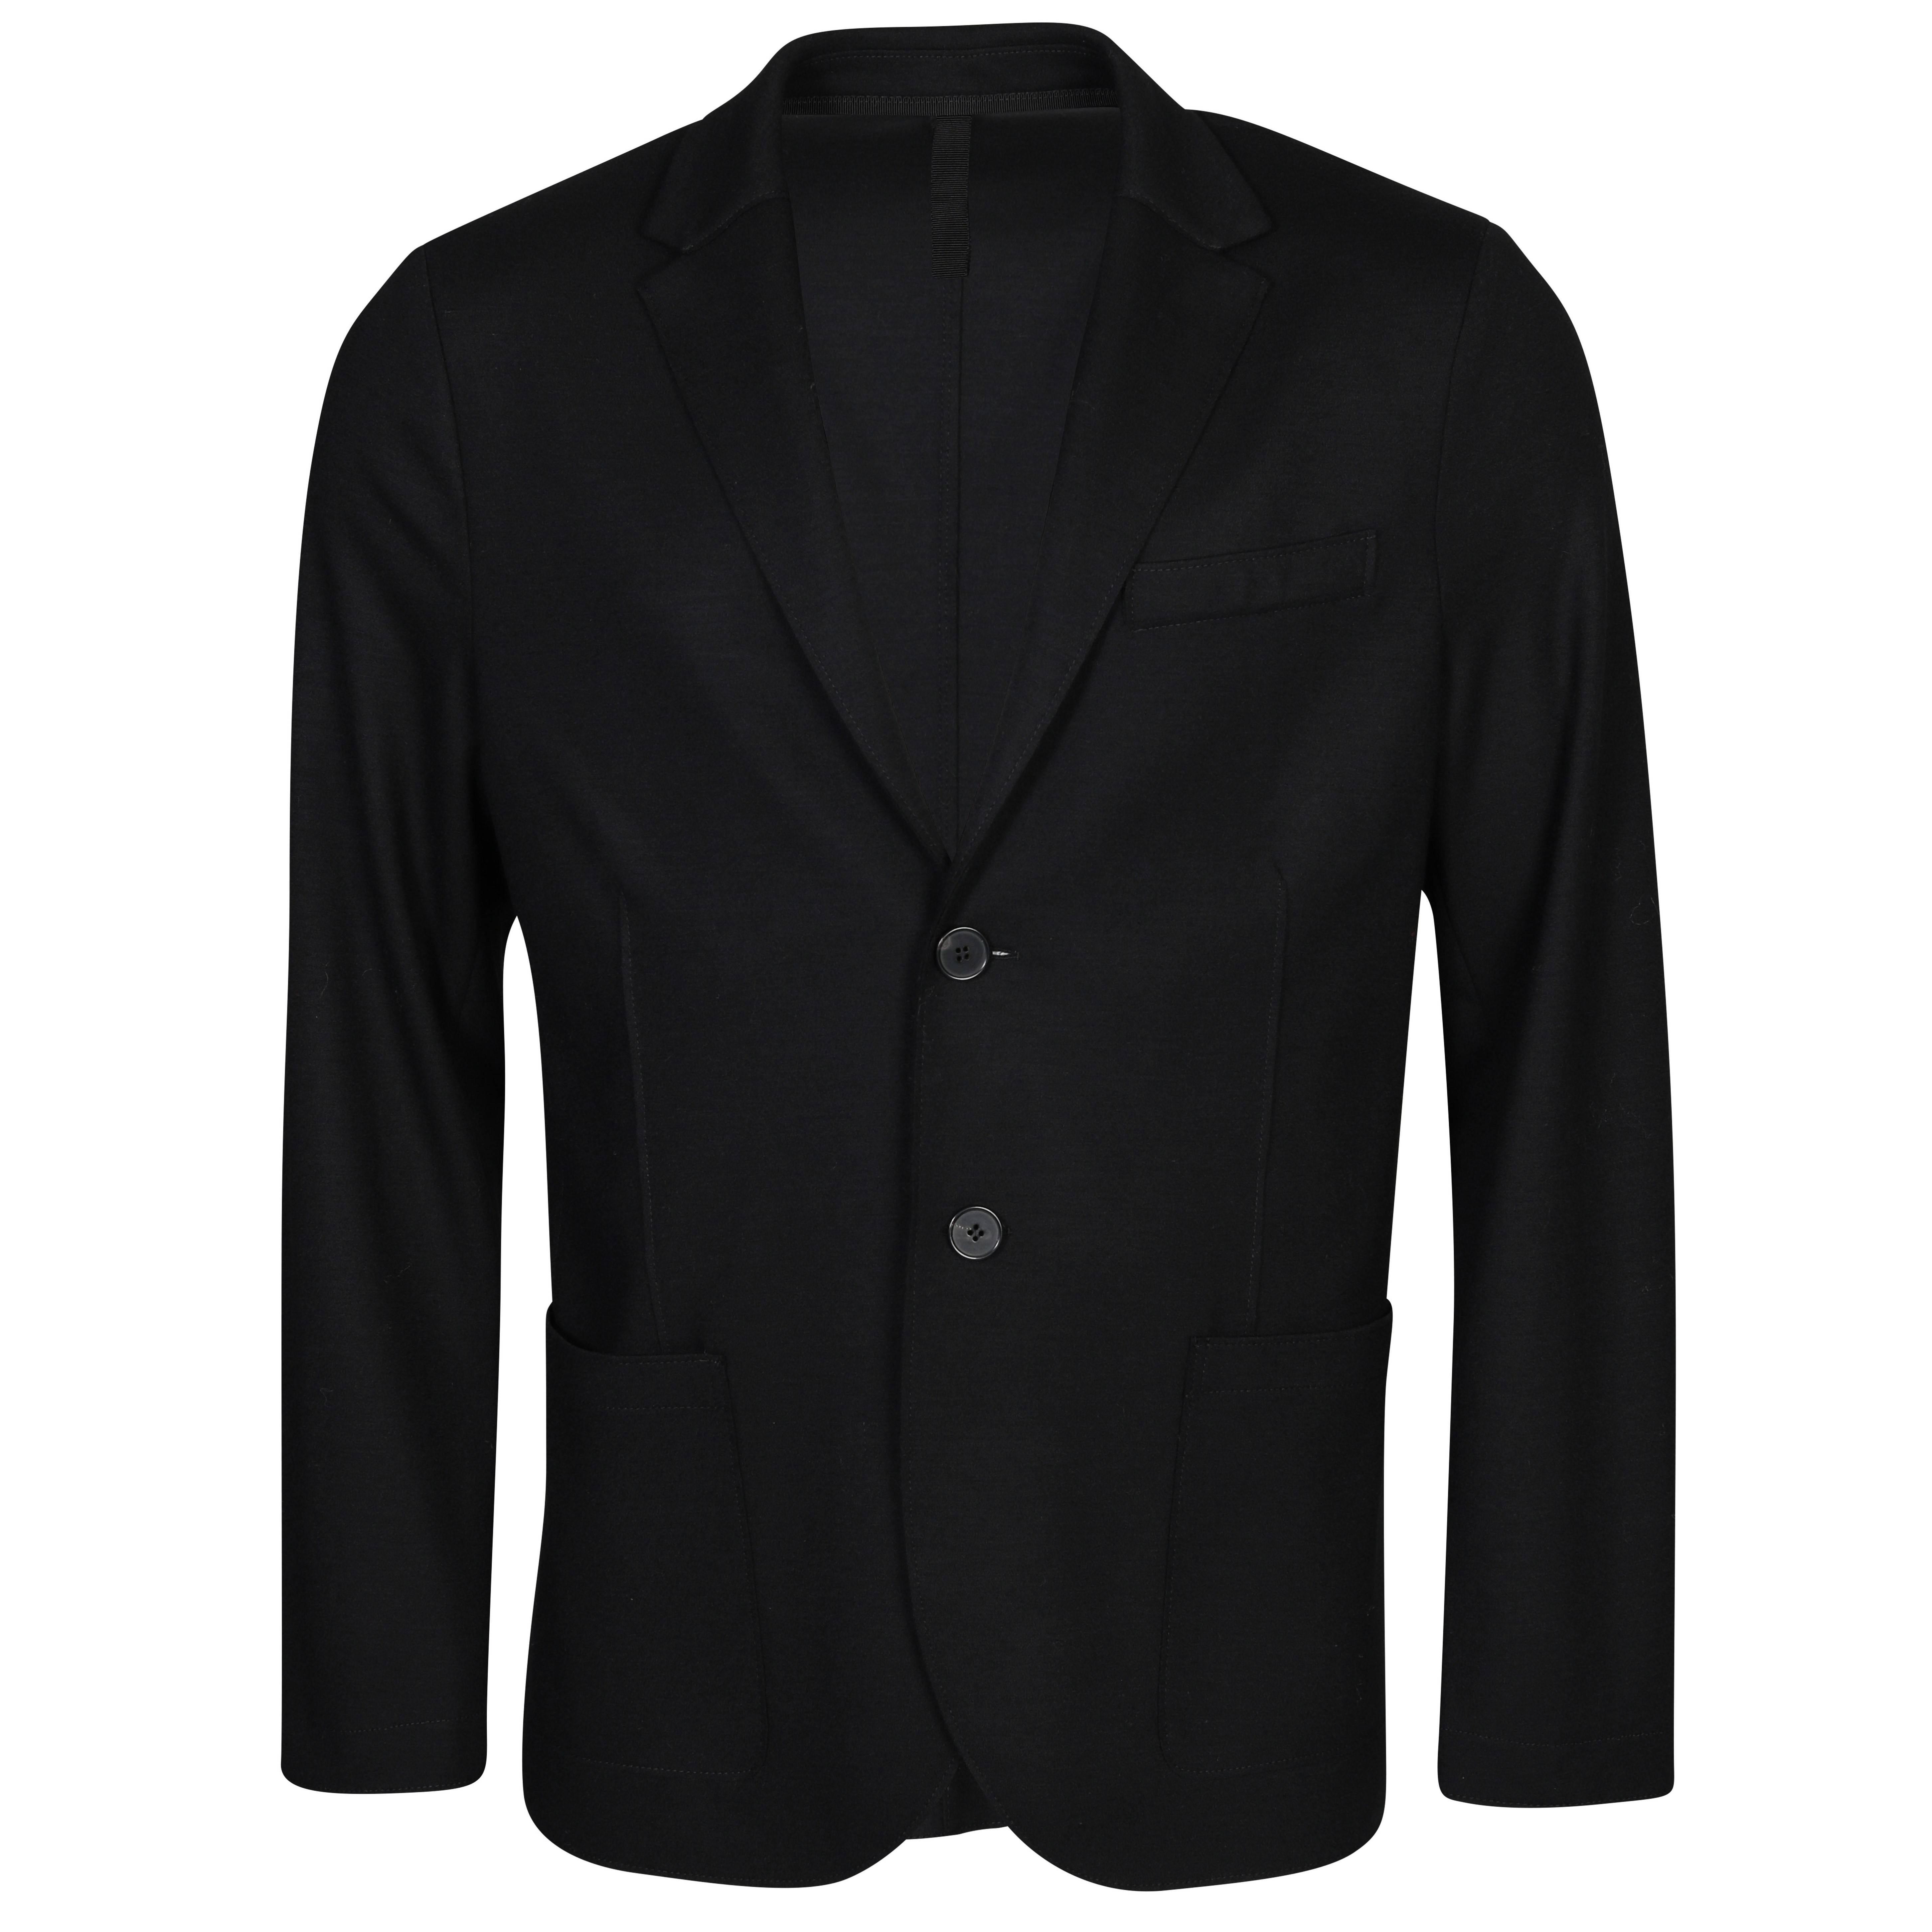 HARRIS WHARF Wool Jacket in Black 46